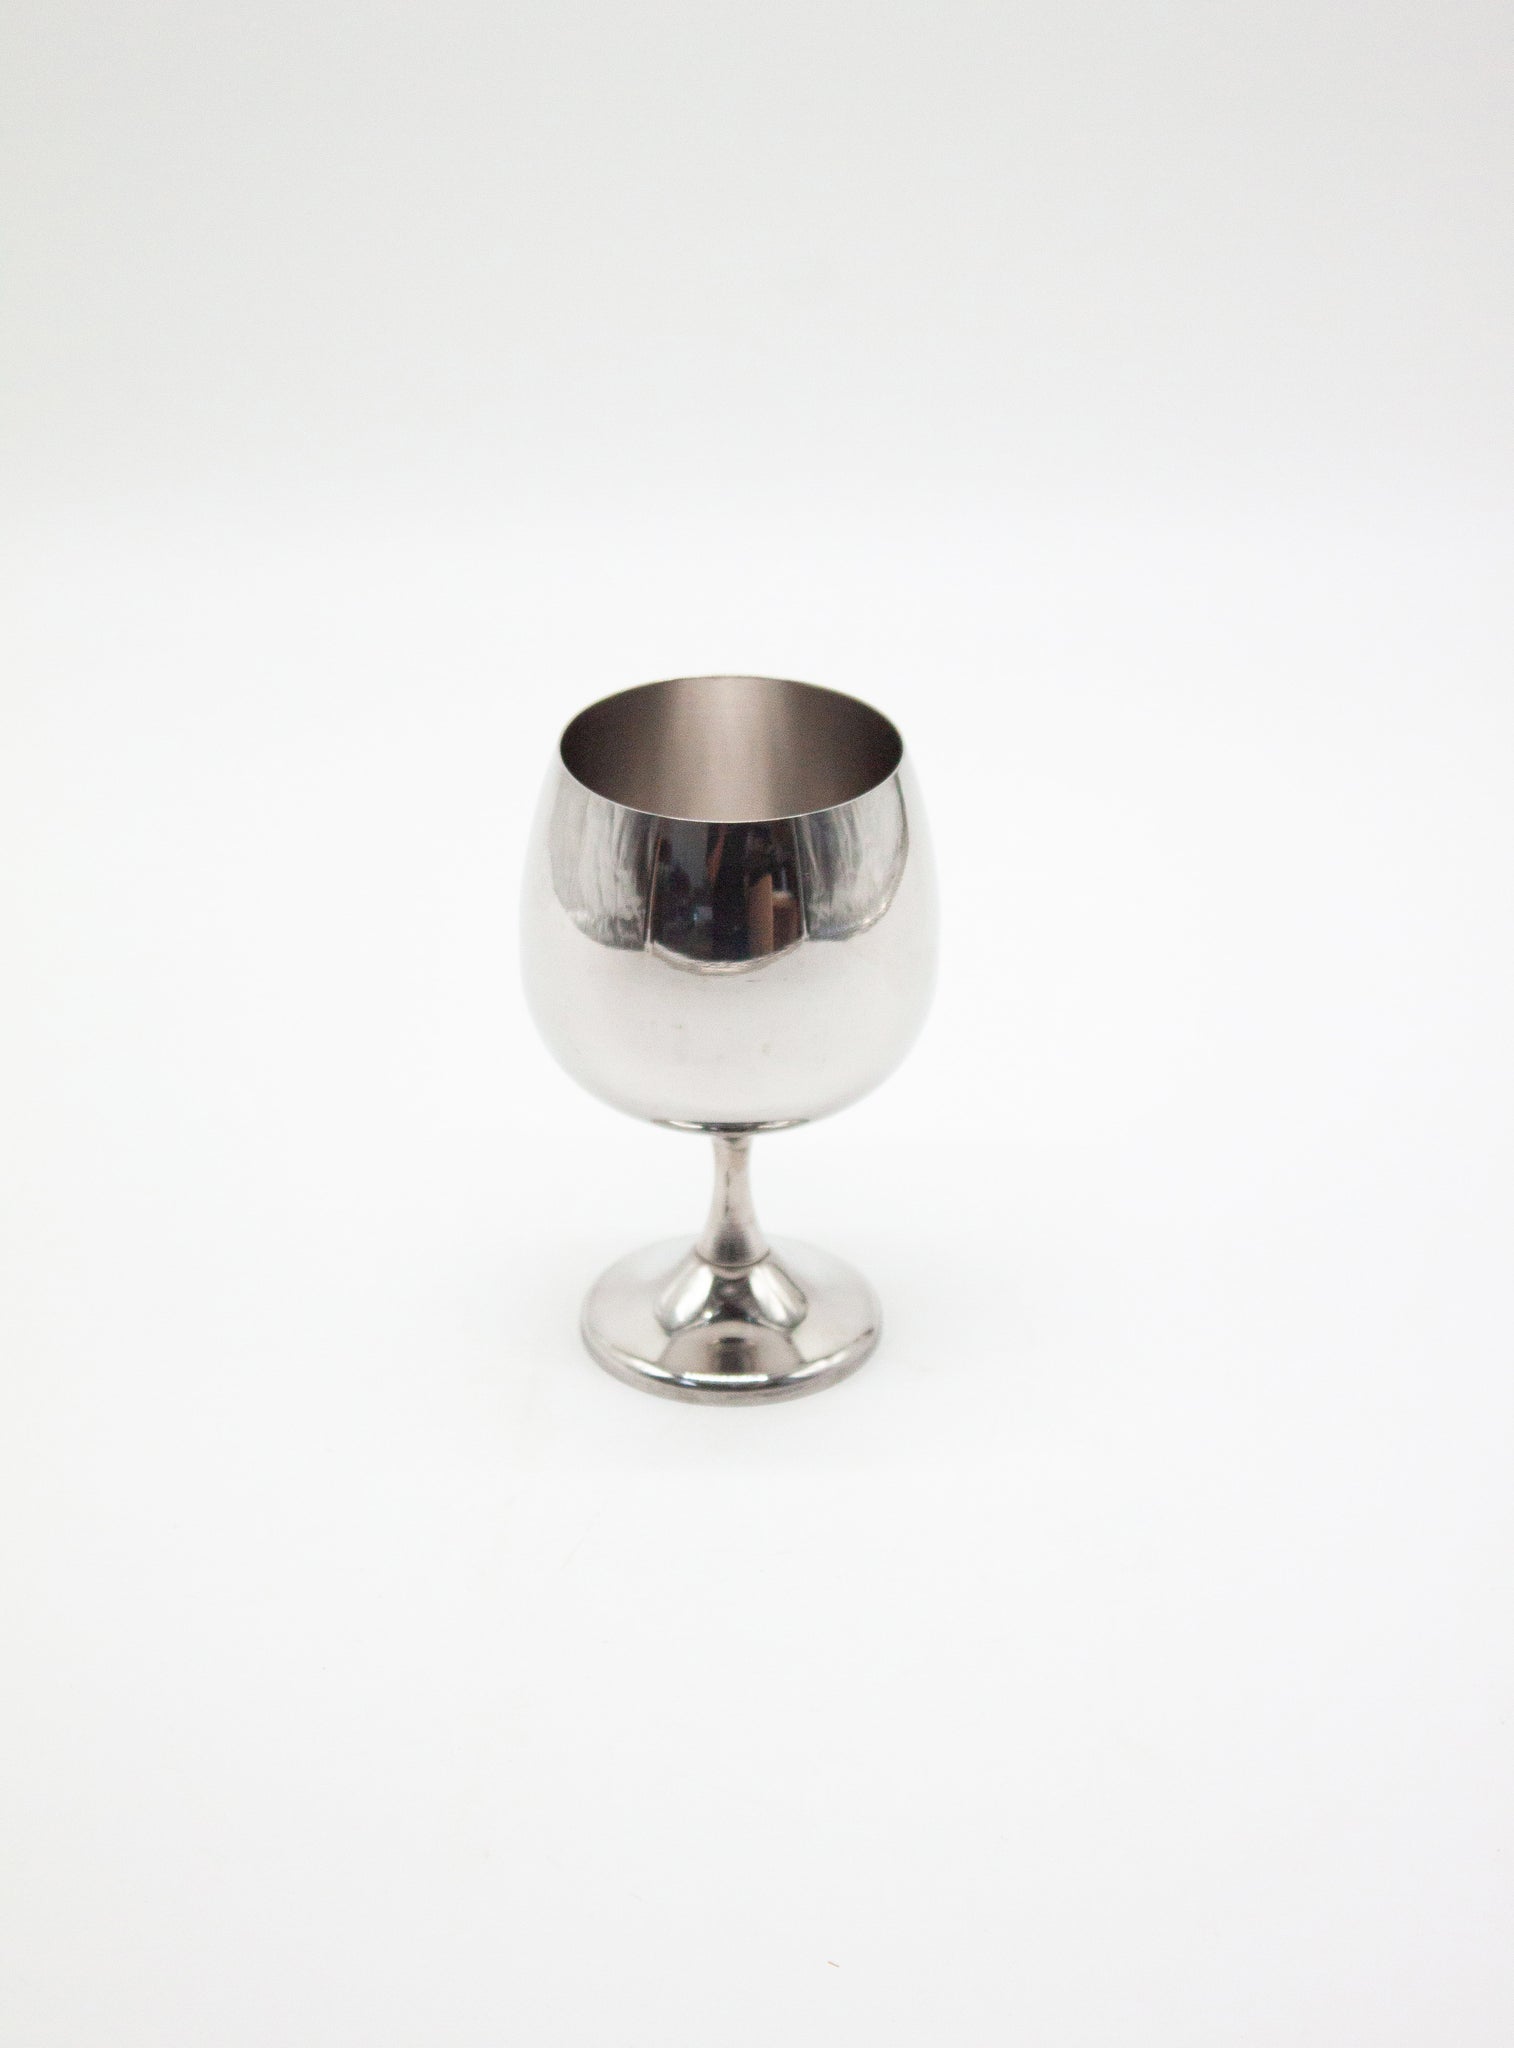 AMC Italy Stainless Steel Wine Glasses art. 2057 (6 pcs)